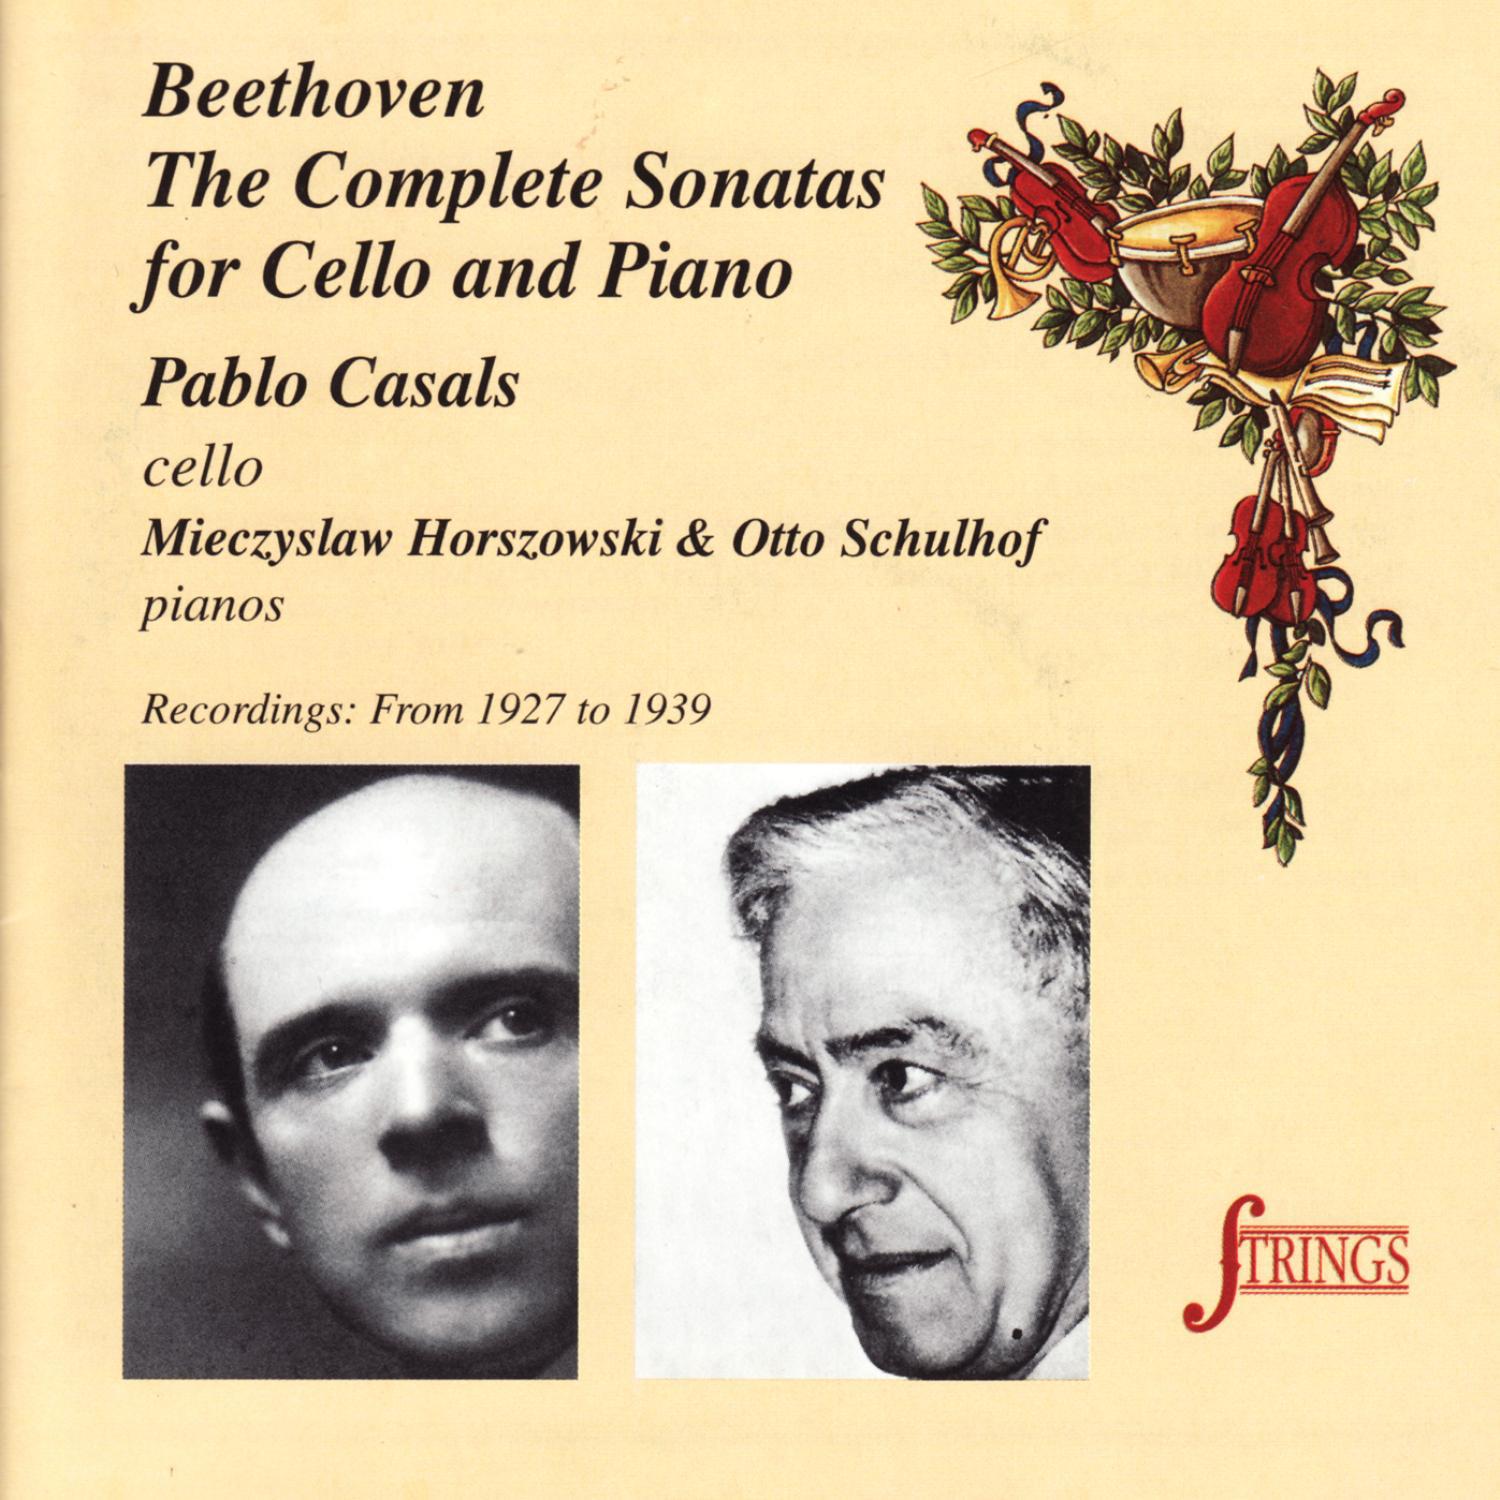 Sonata No. 1 for Cello and Piano in F Major, Op. 5 No. 1: II. Rondo. Allegro vivace